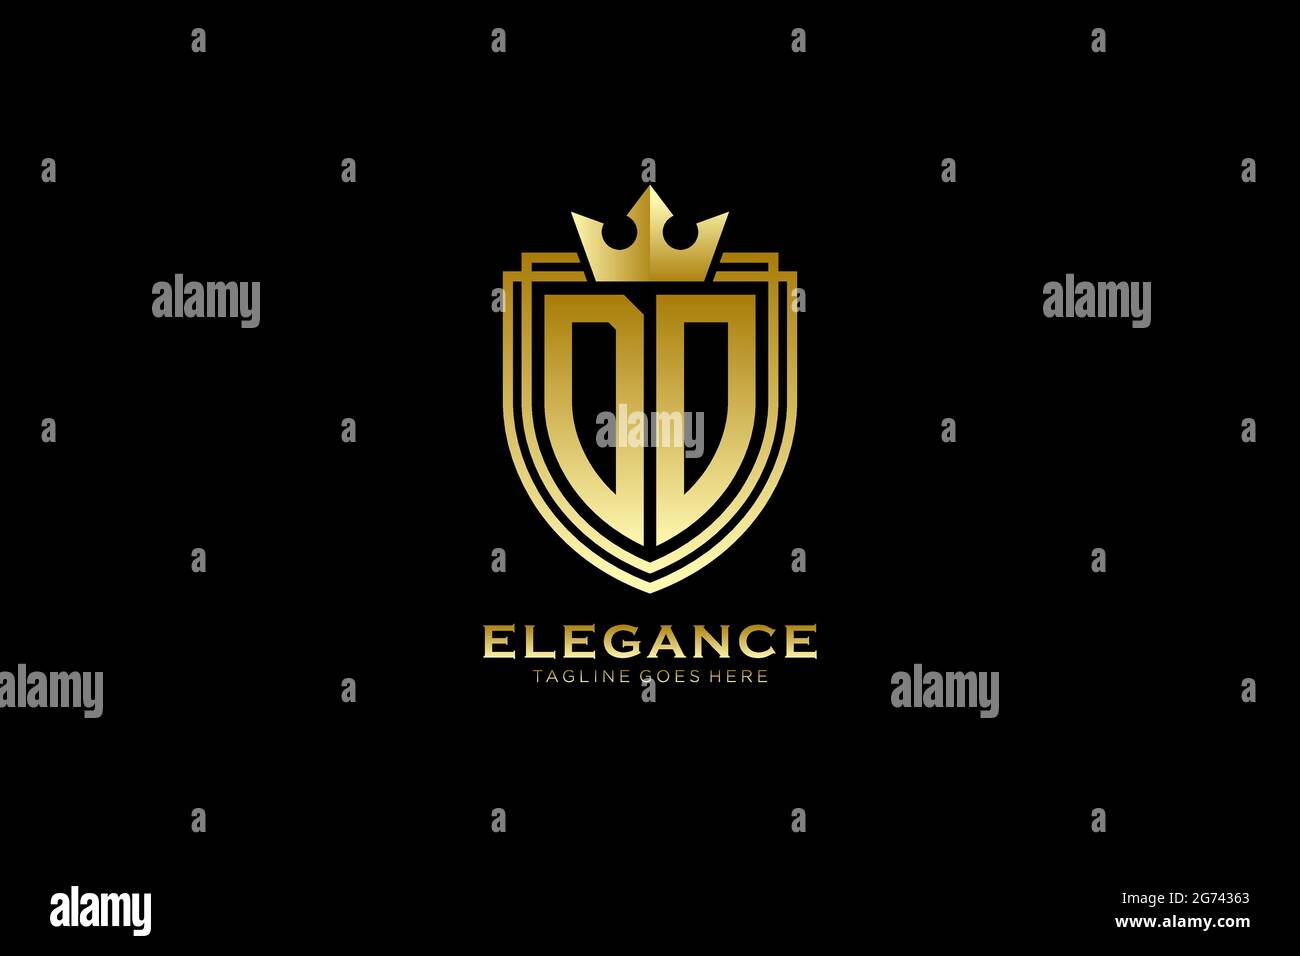 MACHEN SIE ELEGANTE Luxus-Monogramm-Logo oder Badge-Vorlage mit Rollen und königliche Krone - perfekt für luxuriöse Branding-Projekte Stock Vektor